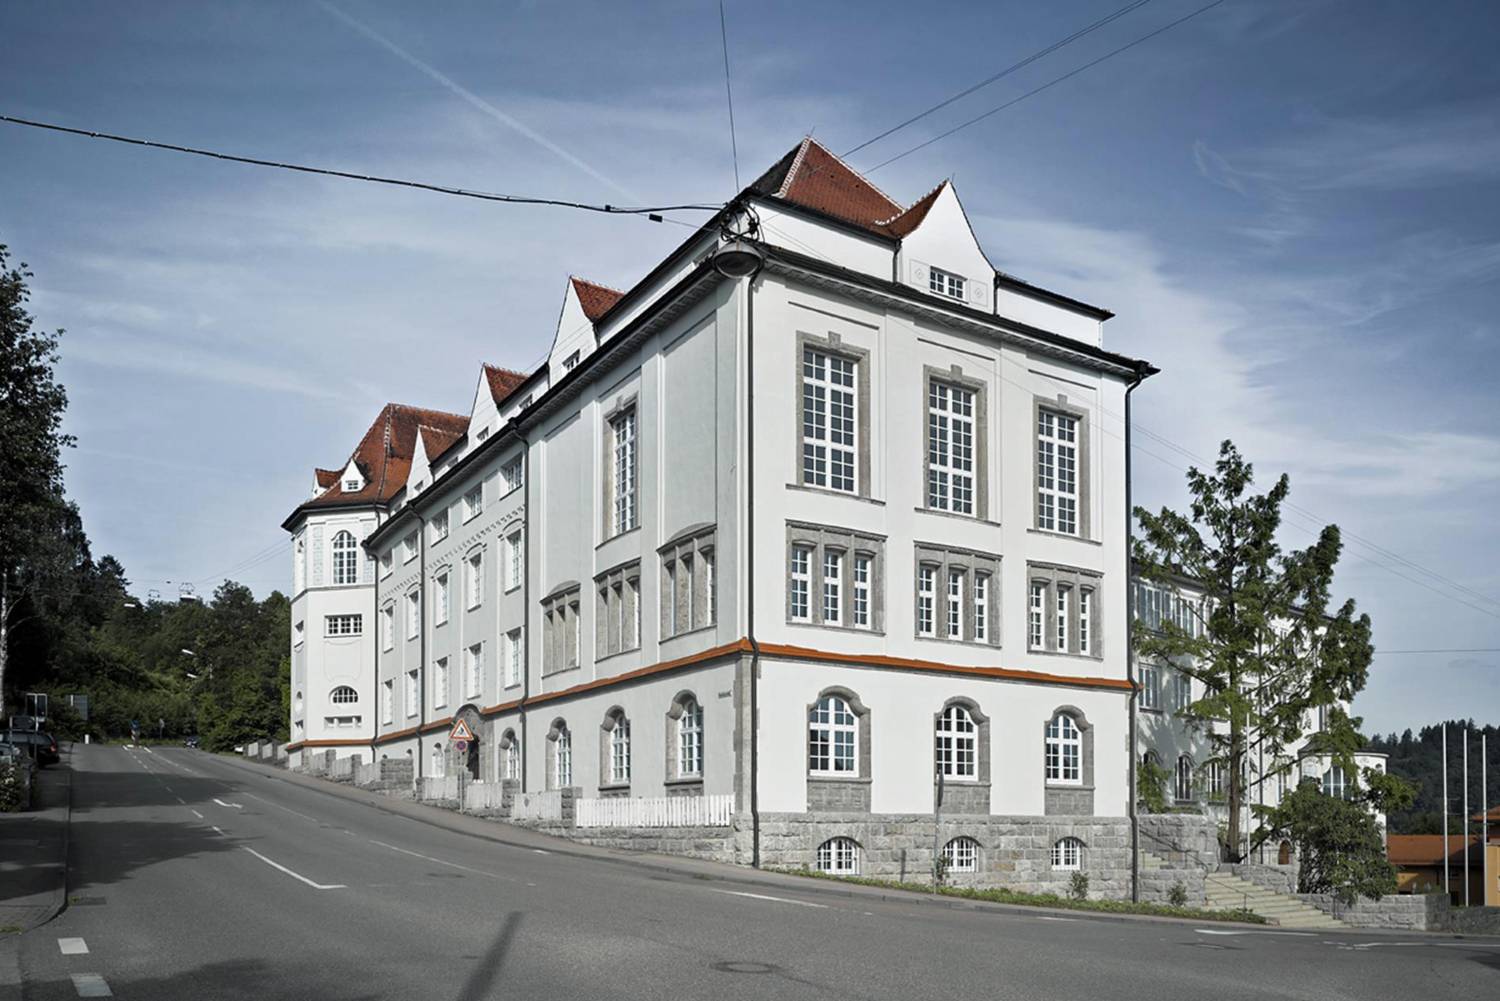 Zu den Leistungen von Klaiber + Oettle Architekten und Ingenieure in Schwäbisch Gmünd gehören unter anderem: Architektur, Innenarchitektur oder Projektentwicklung.